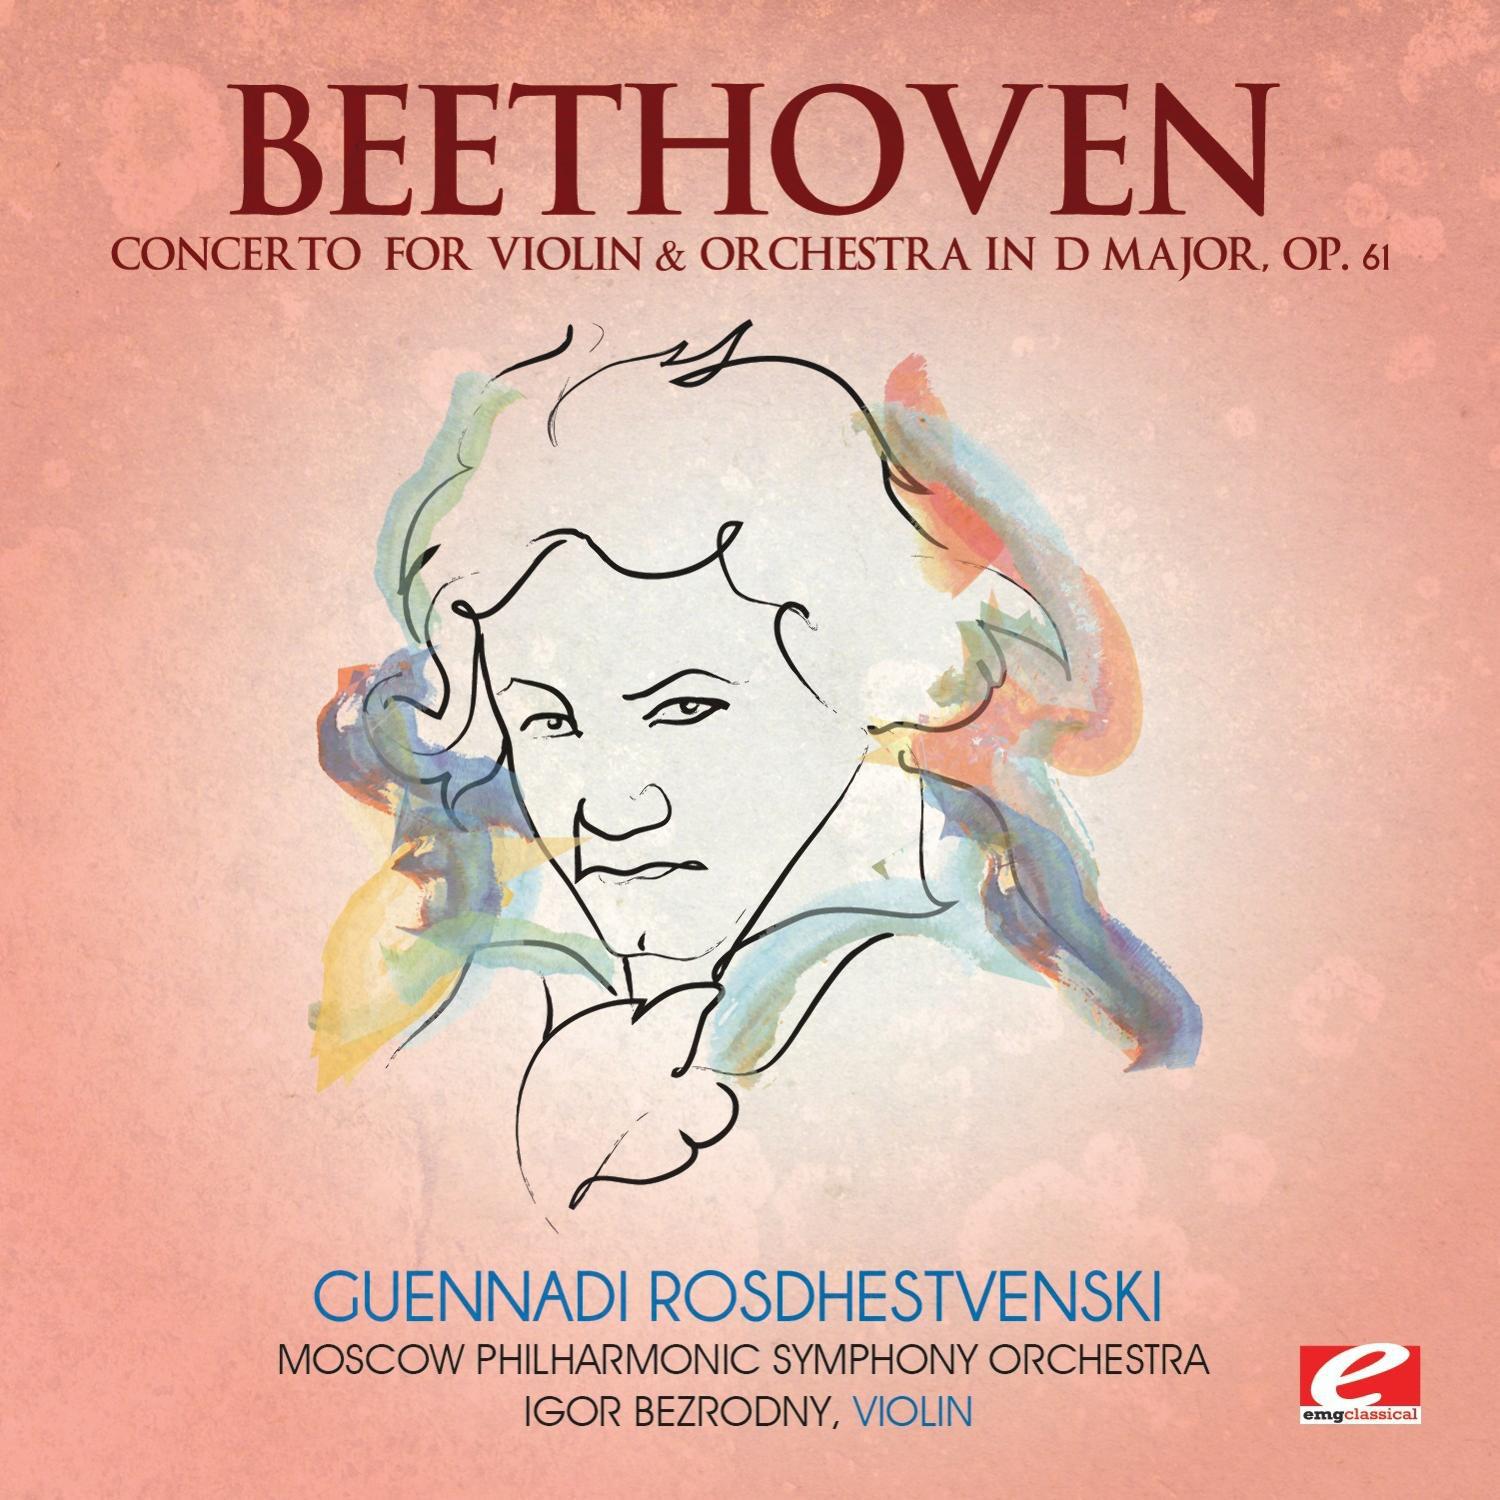 Concerto for Violin & Orchestra in D Major, Op. 61: I. Allegro ma non troppo